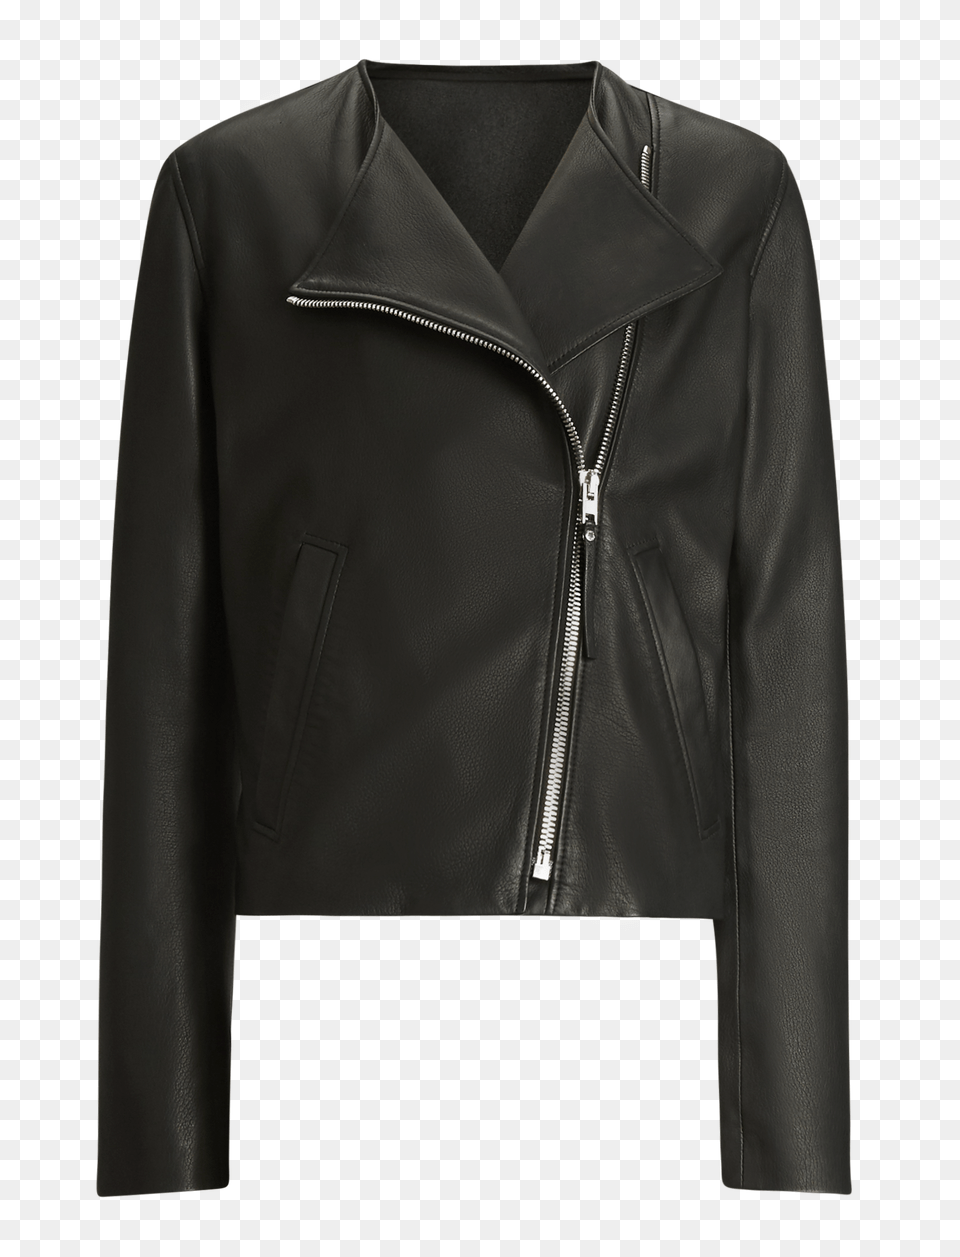 Leather Jacket, Clothing, Coat, Leather Jacket Png Image